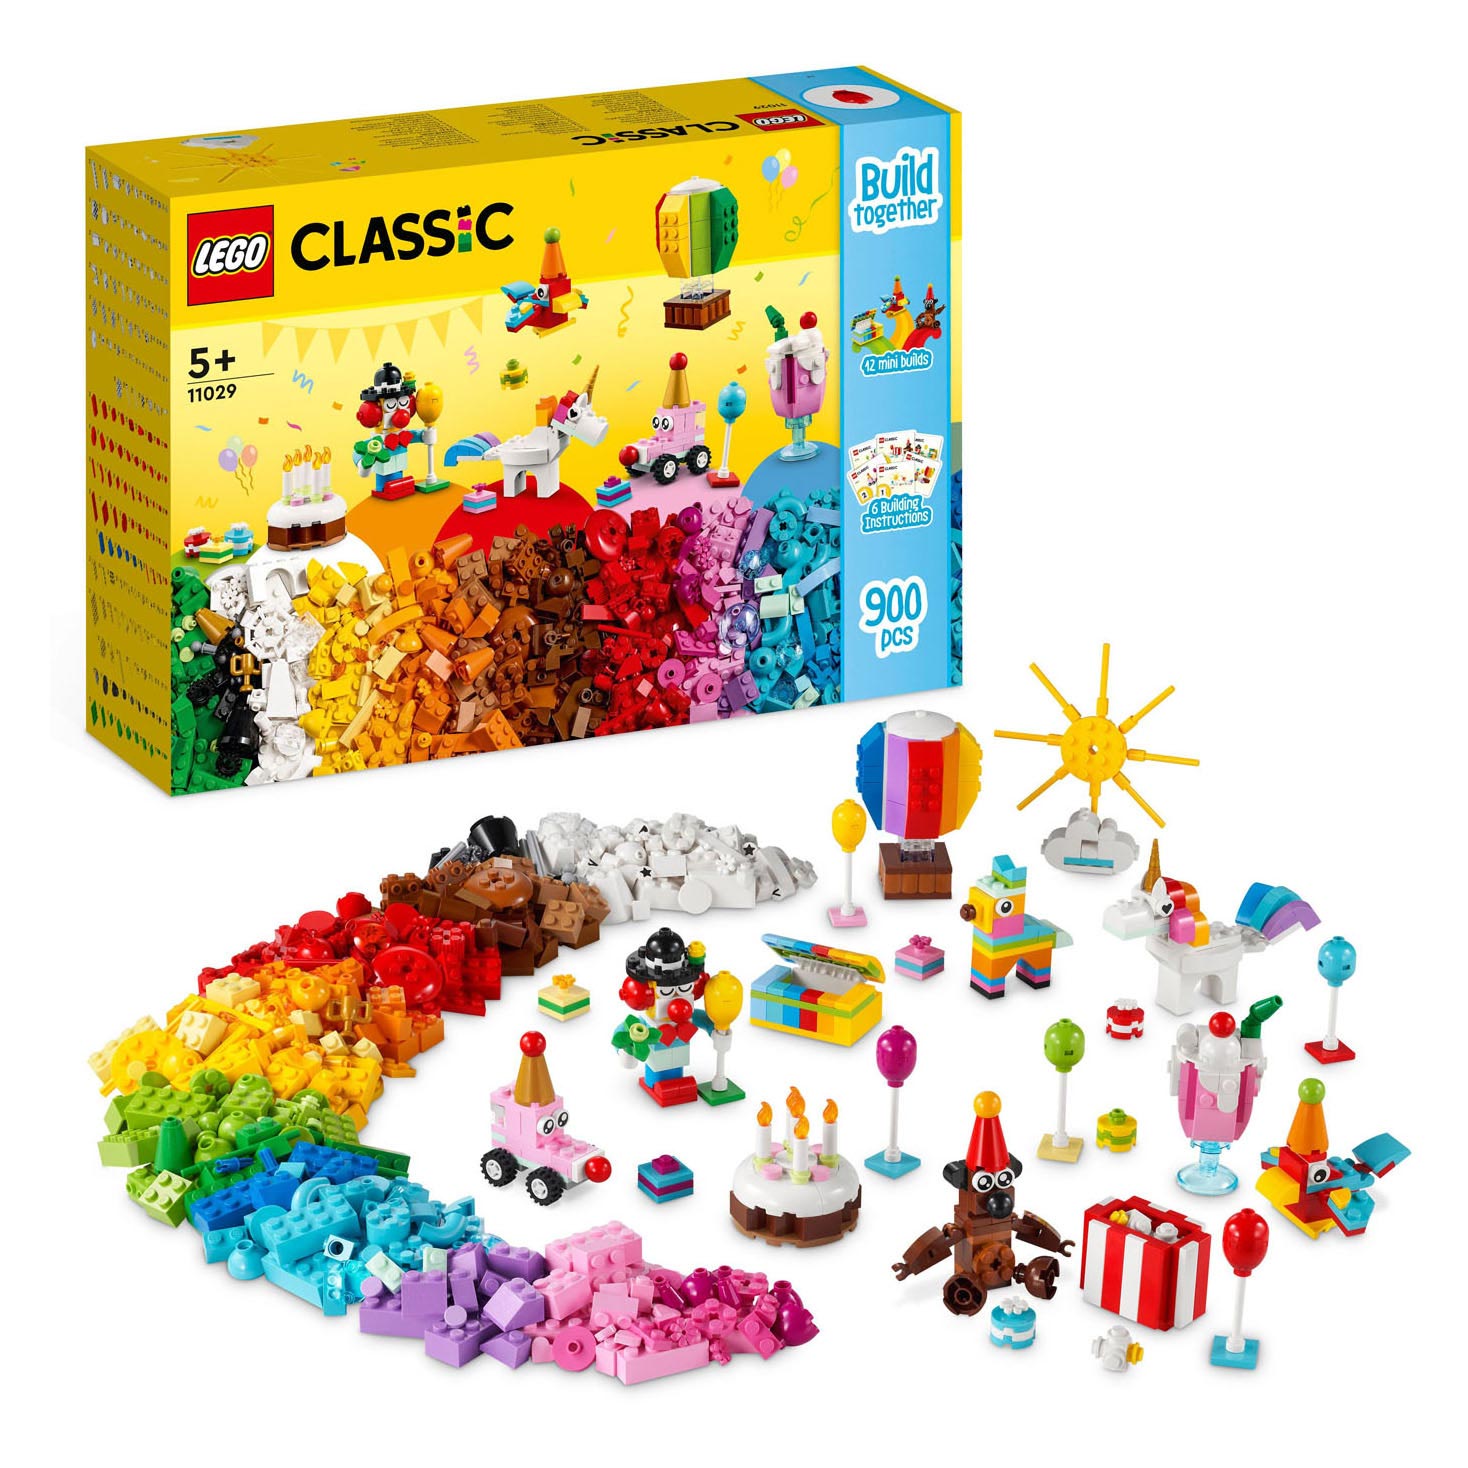 Concessie En team zaad LEGO Classic 11029 Creatieve Feestset online kopen? | Lobbes Speelgoed